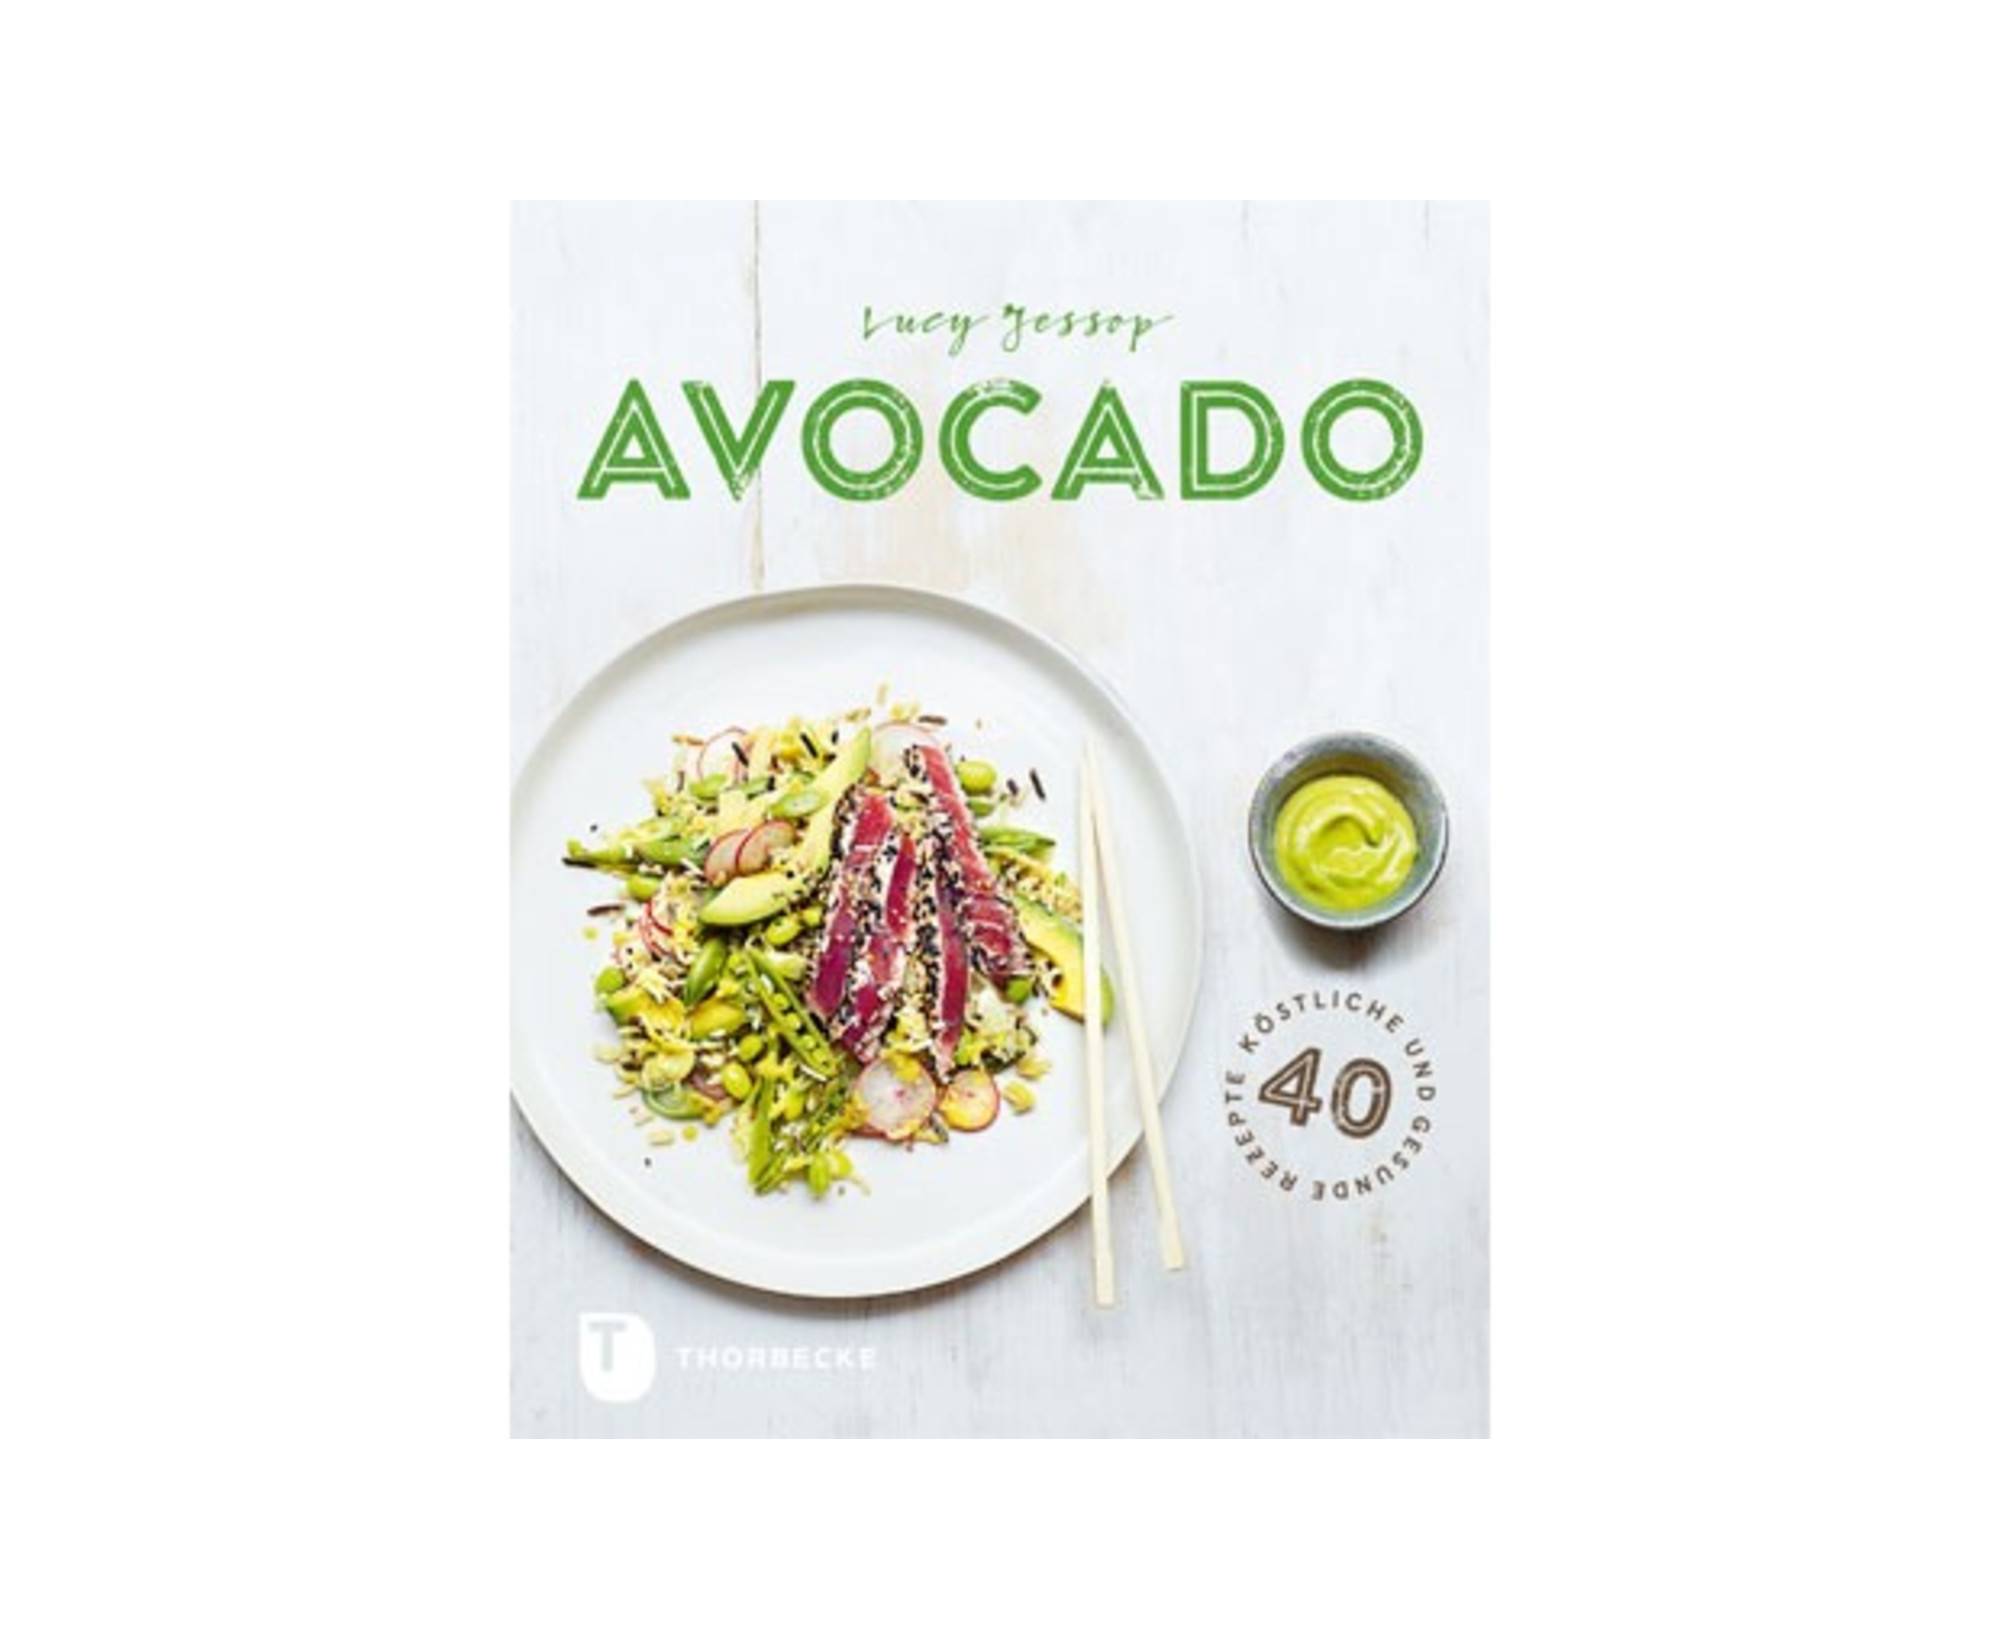 Avocado / Thorbecke Verlag